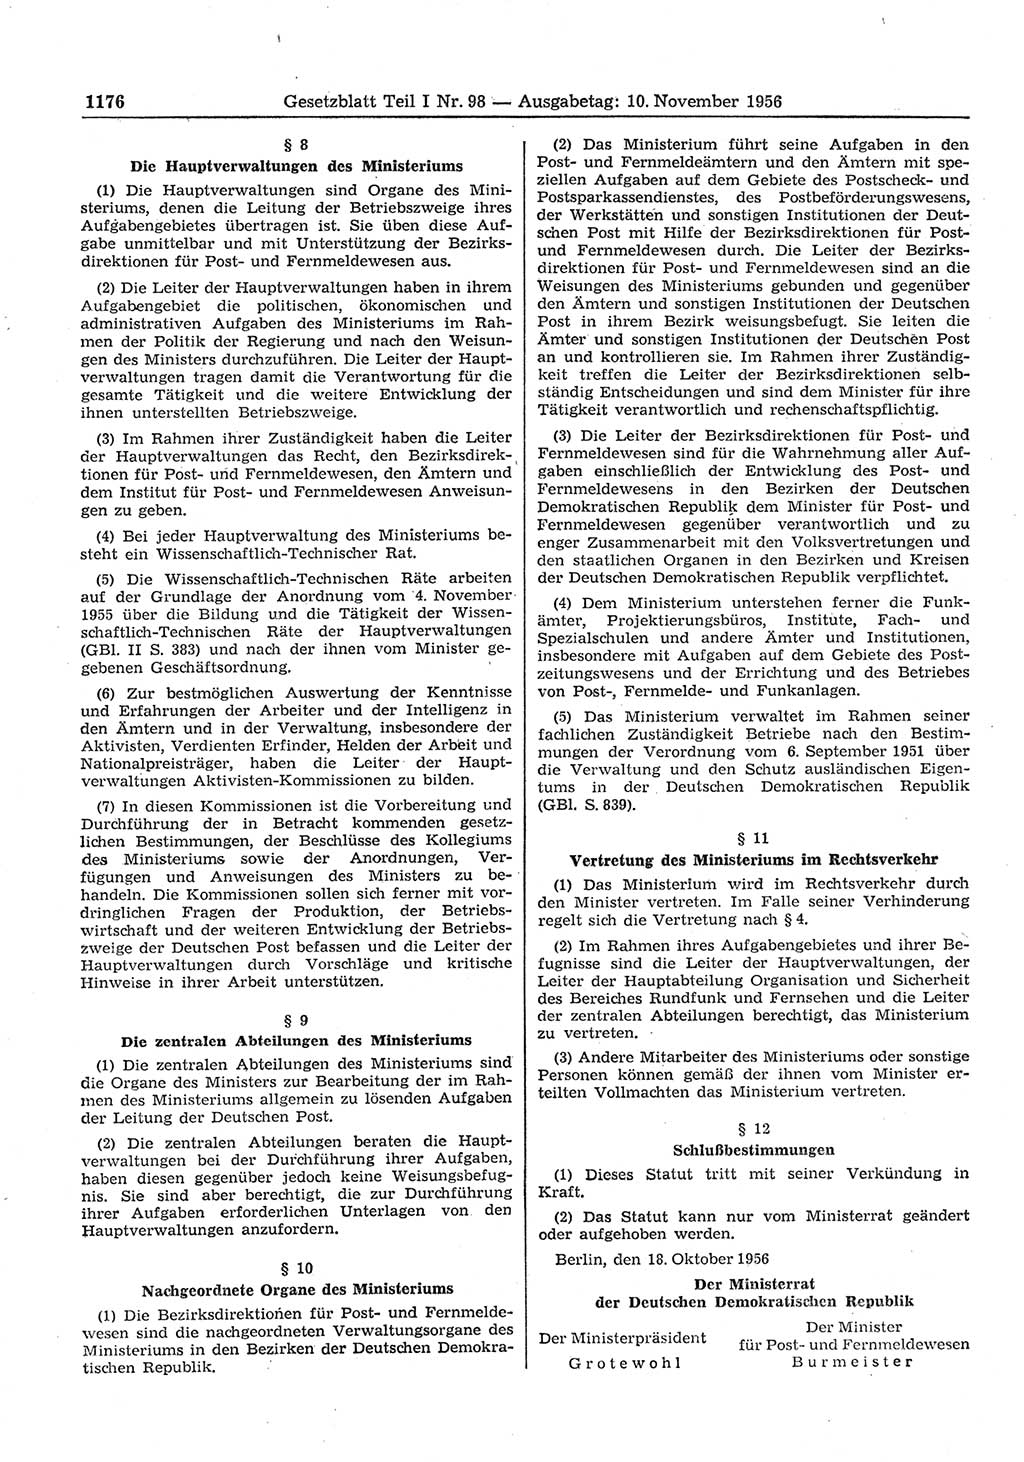 Gesetzblatt (GBl.) der Deutschen Demokratischen Republik (DDR) Teil Ⅰ 1956, Seite 1176 (GBl. DDR Ⅰ 1956, S. 1176)